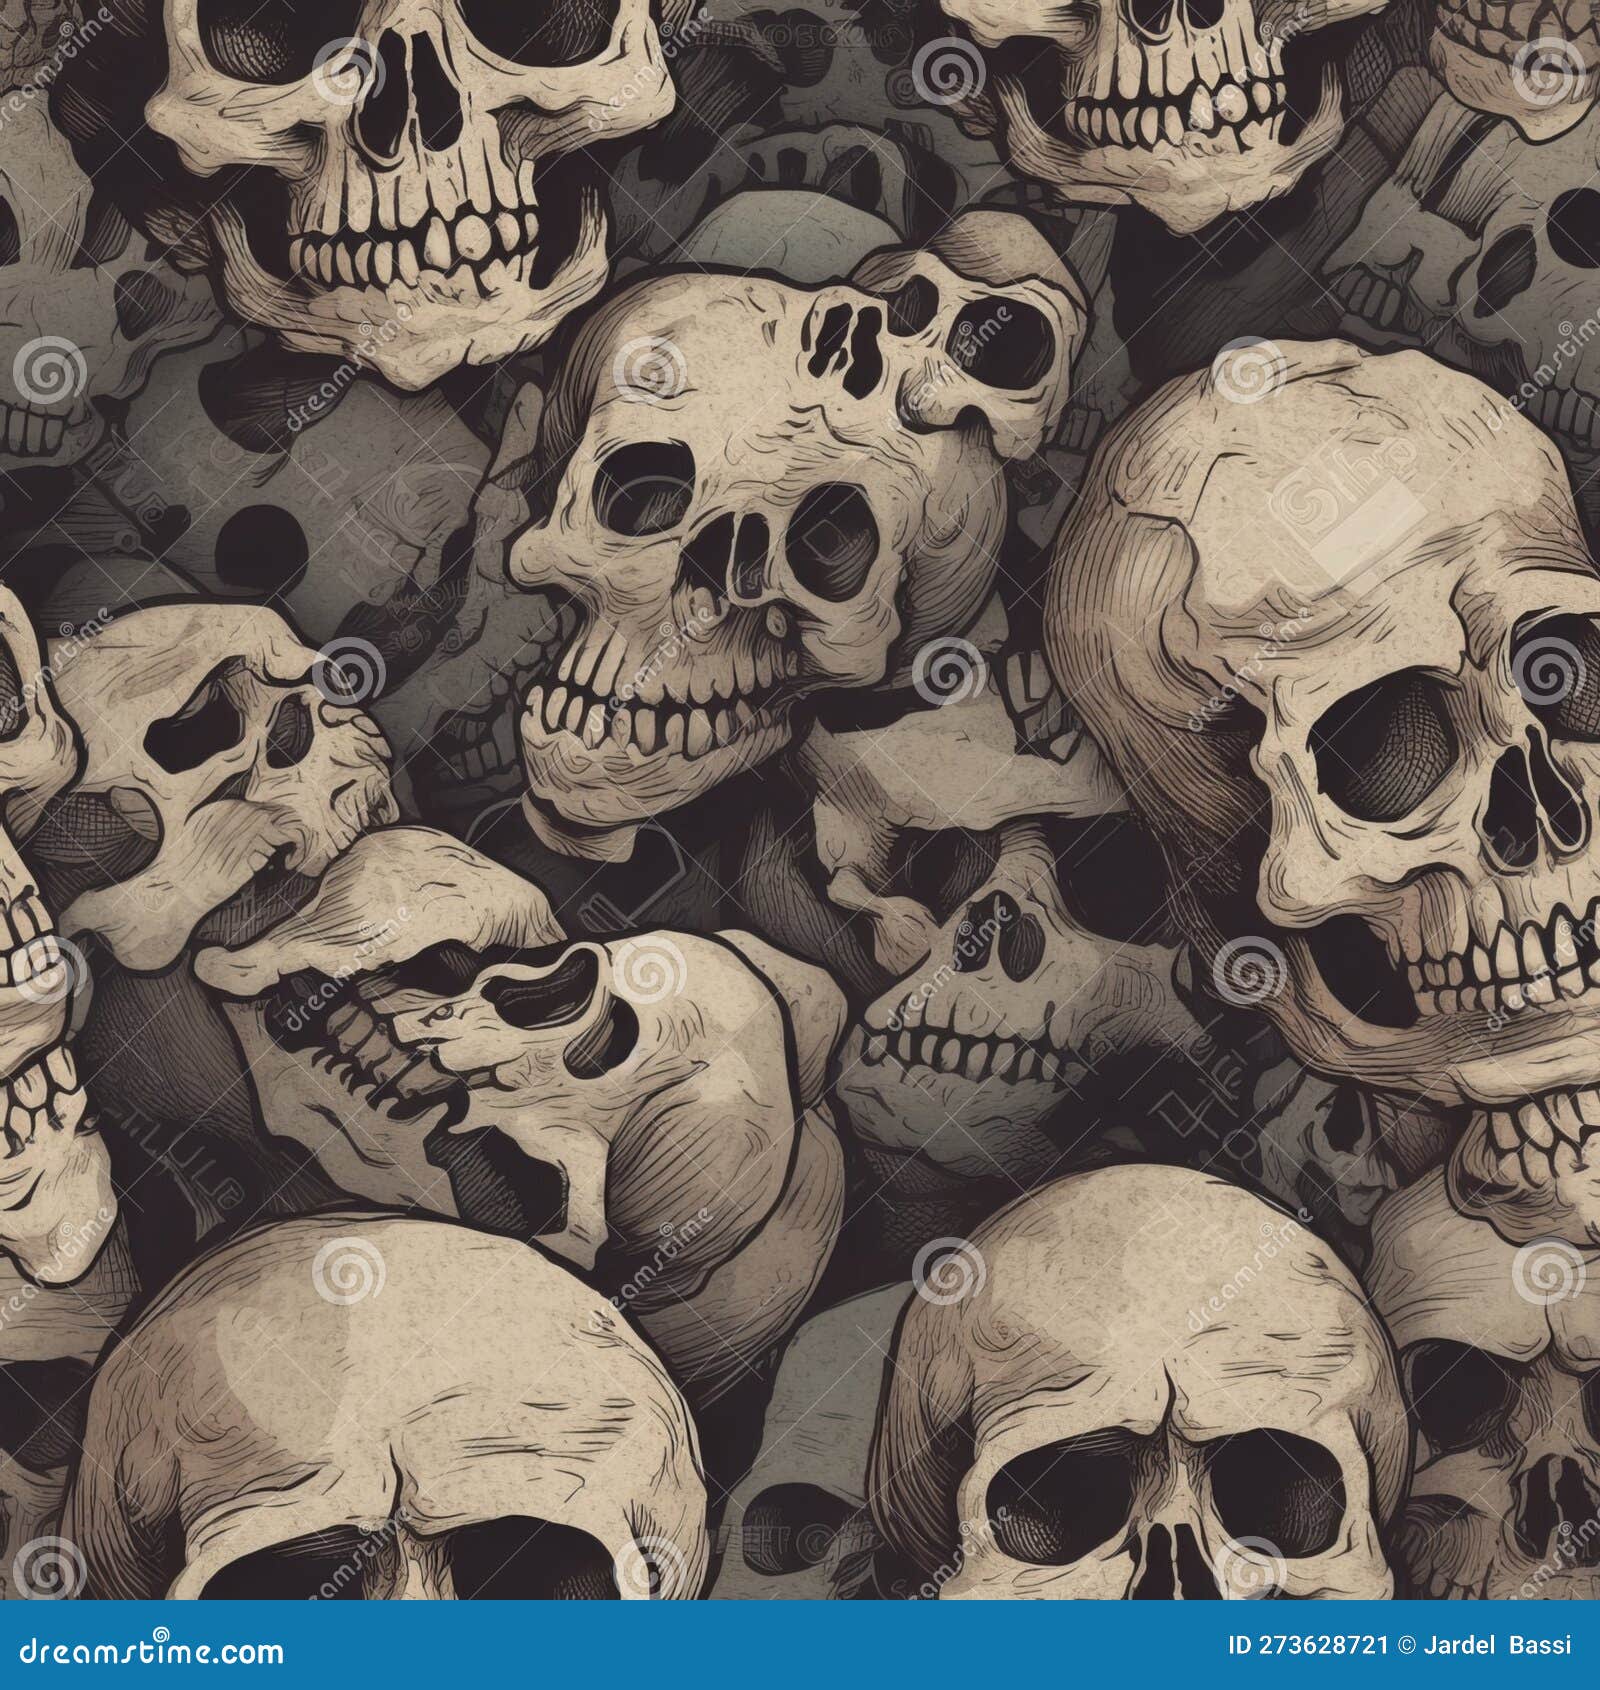 Reaper half sleeve with a pile of skulls binkdtattoo halfsleeve   Instagram